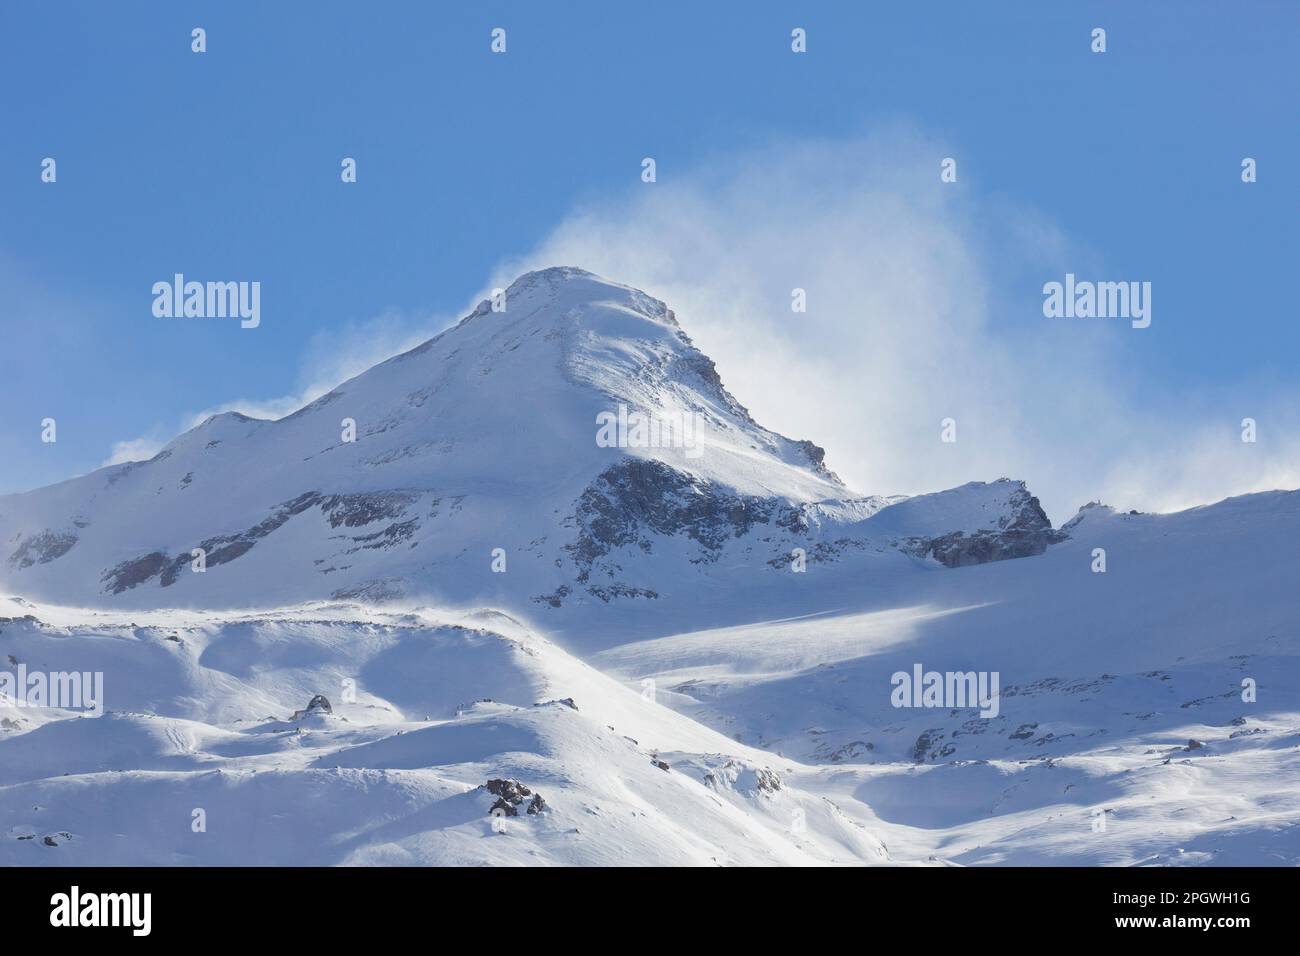 La Tresenta in inverno, montagna nel Parco Nazionale del Gran Paradiso, Alpi Graiane al confine tra Piemonte e Valle d'Aosta in Italia Foto Stock